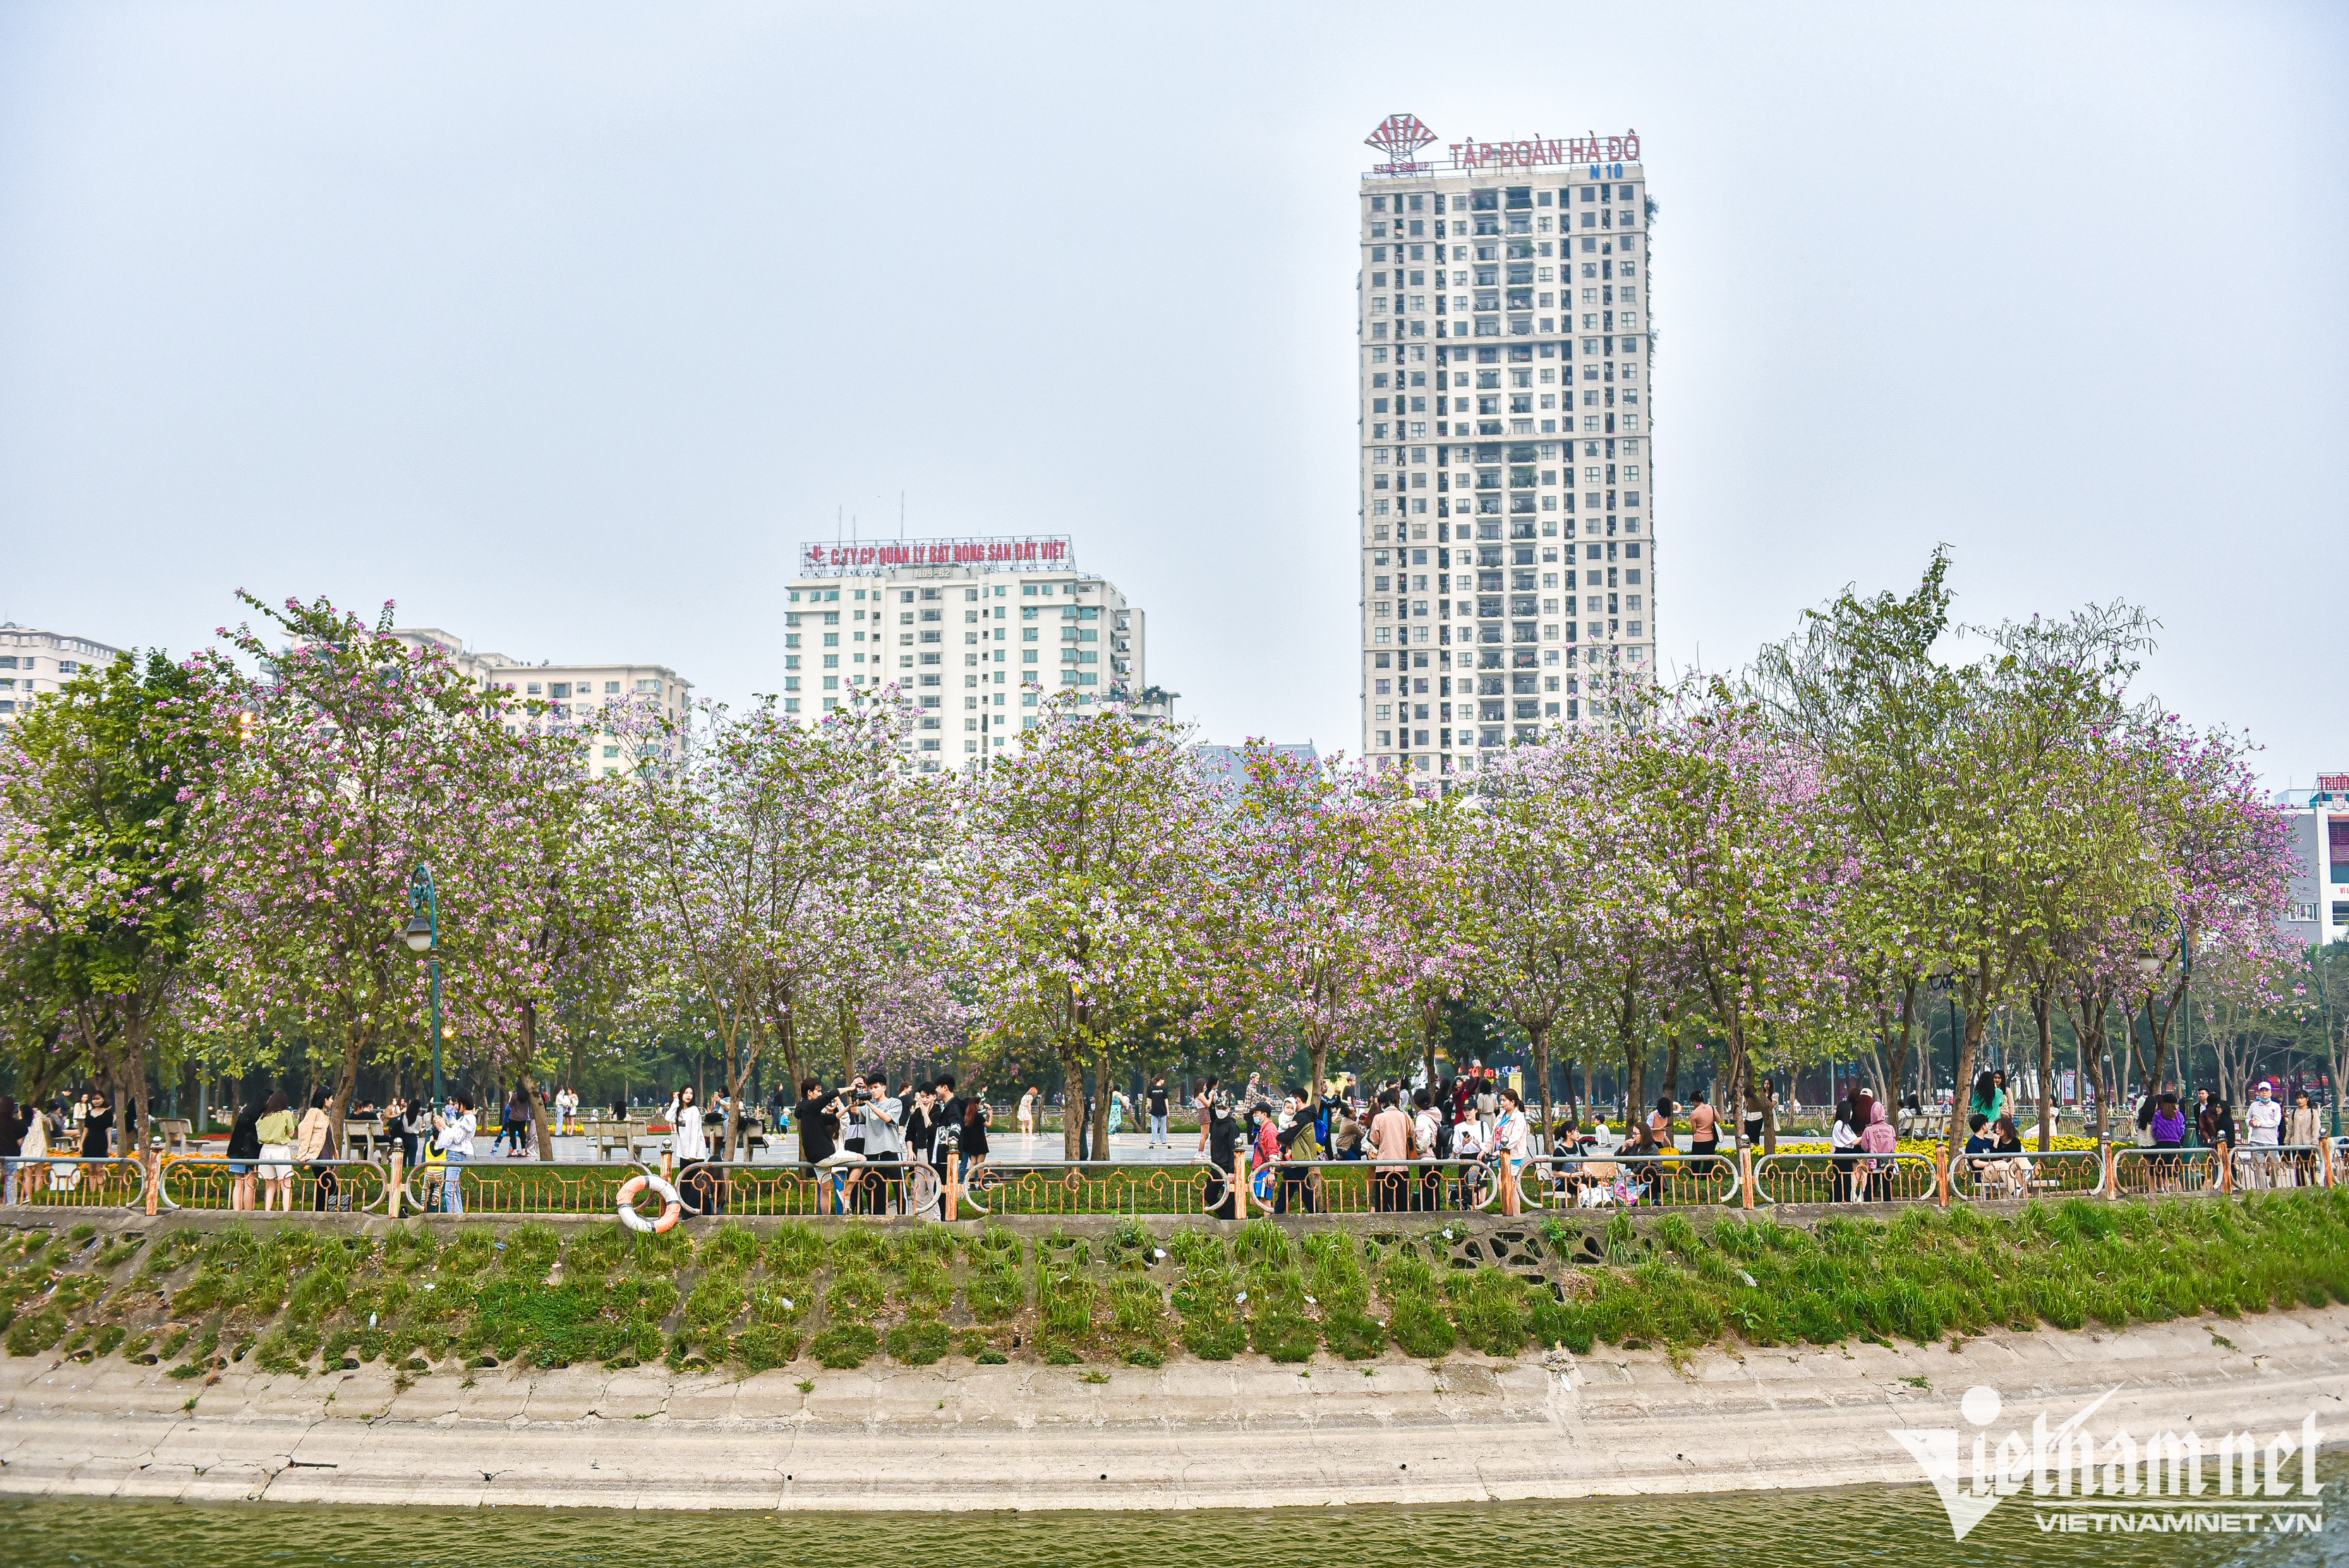 Hoa ban phủ tím góc công viên Hà Nội, cảnh đẹp ngỡ ngàng như ở trời Âu